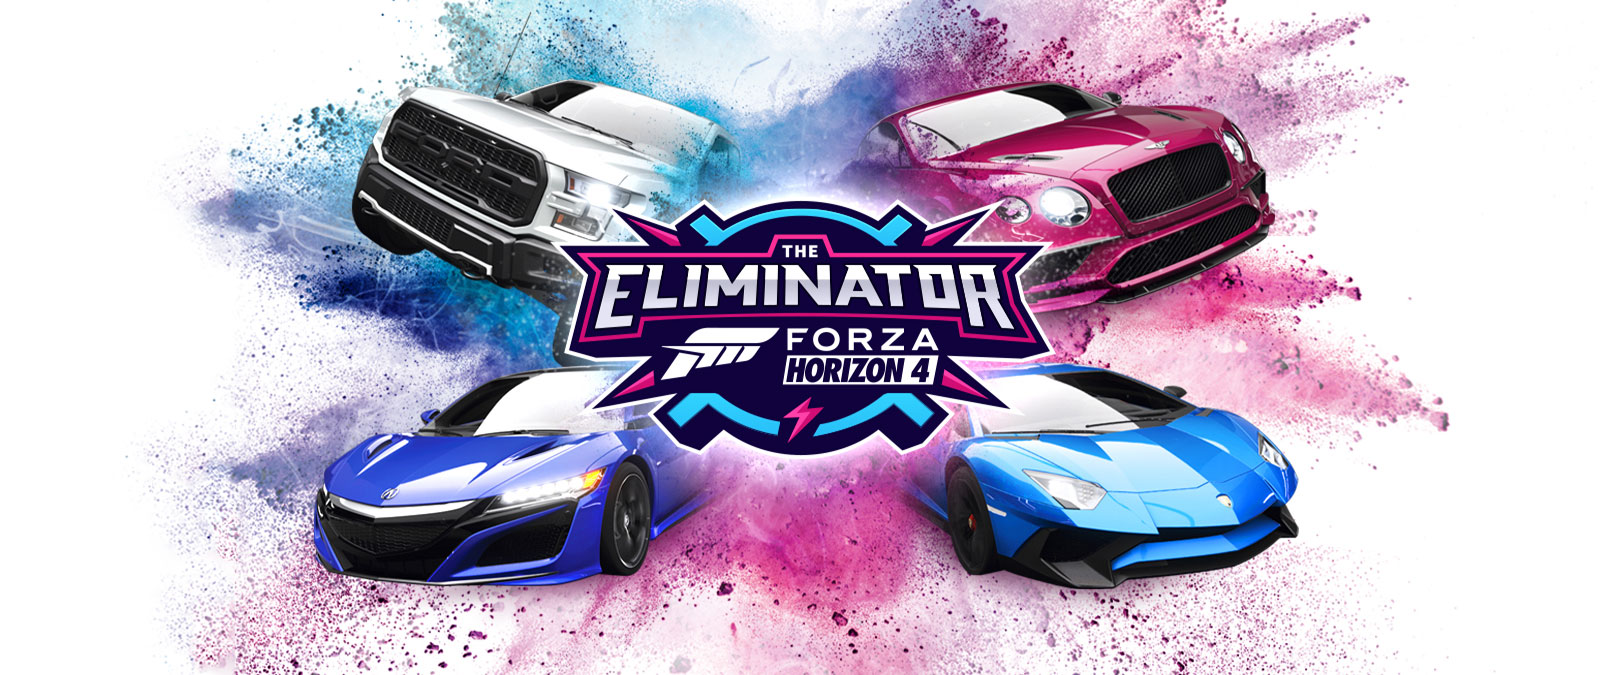 Tryb Eliminator, logo Forza Horizon 4, cztery samochody z niebieskim i różowym pyłem wokół nich